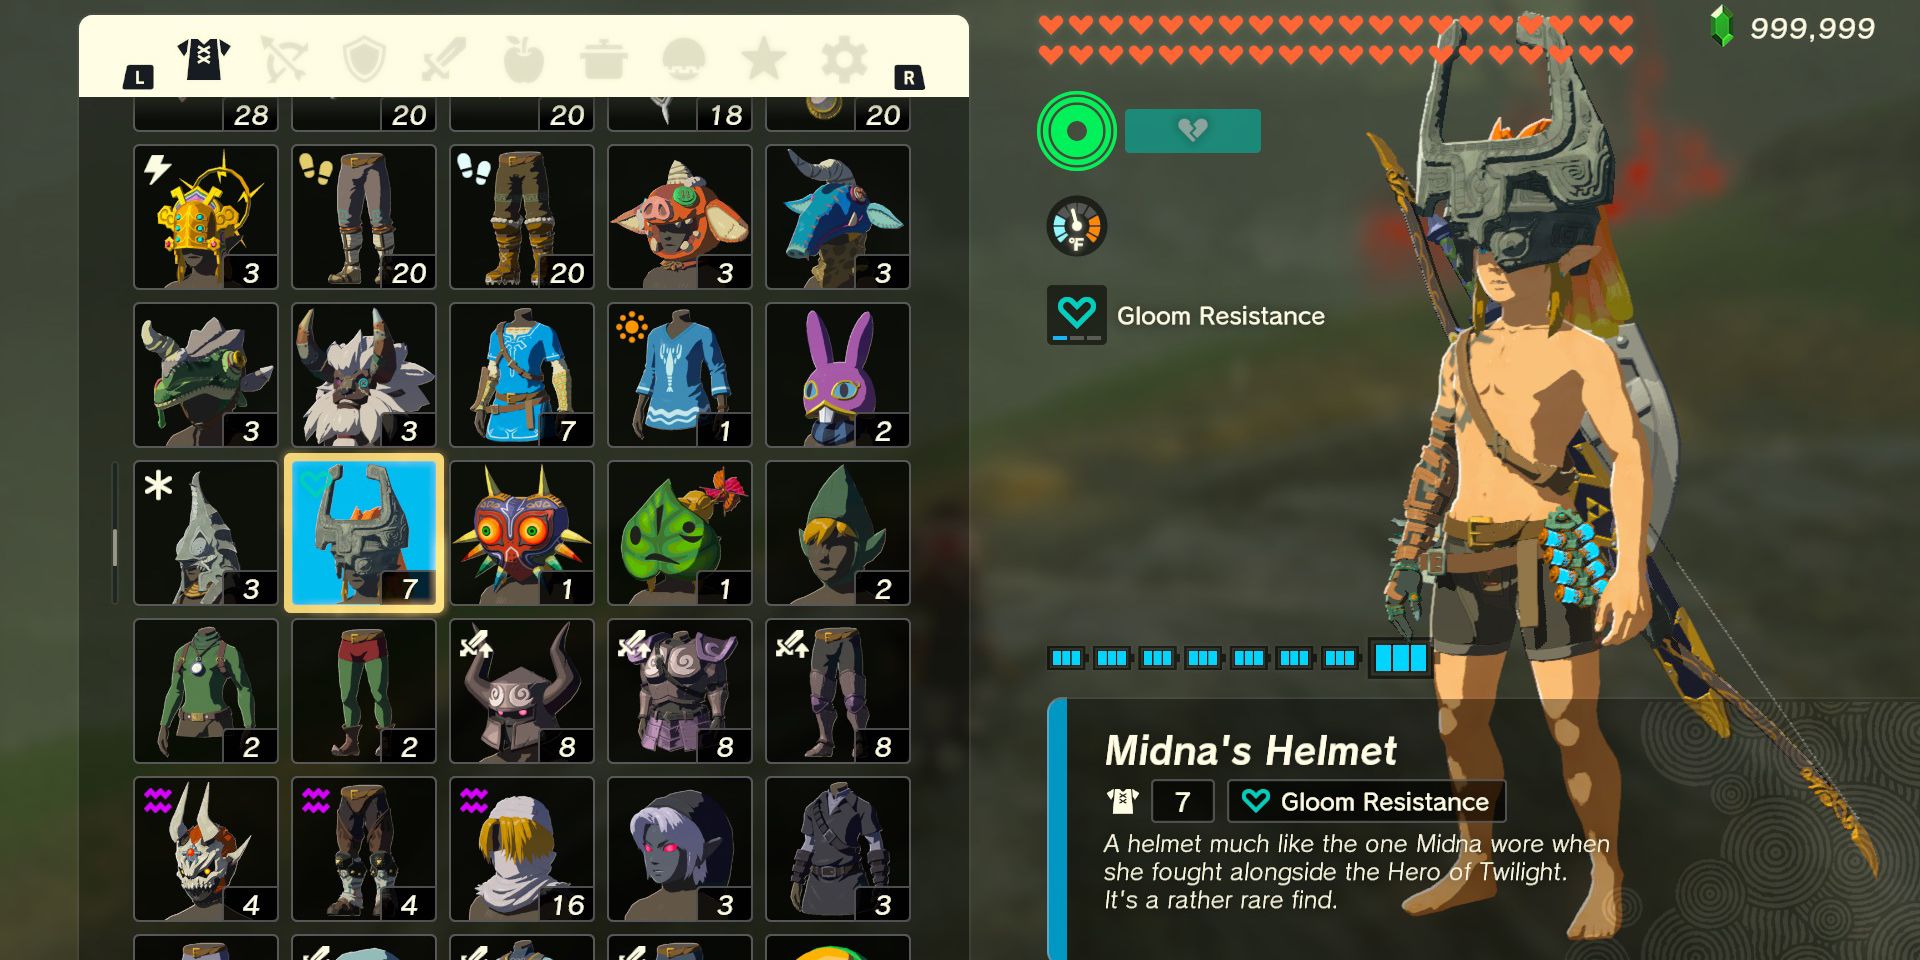 The Midna's Helmet armor piece in The Legend of Zelda: Tears of the Kingdom